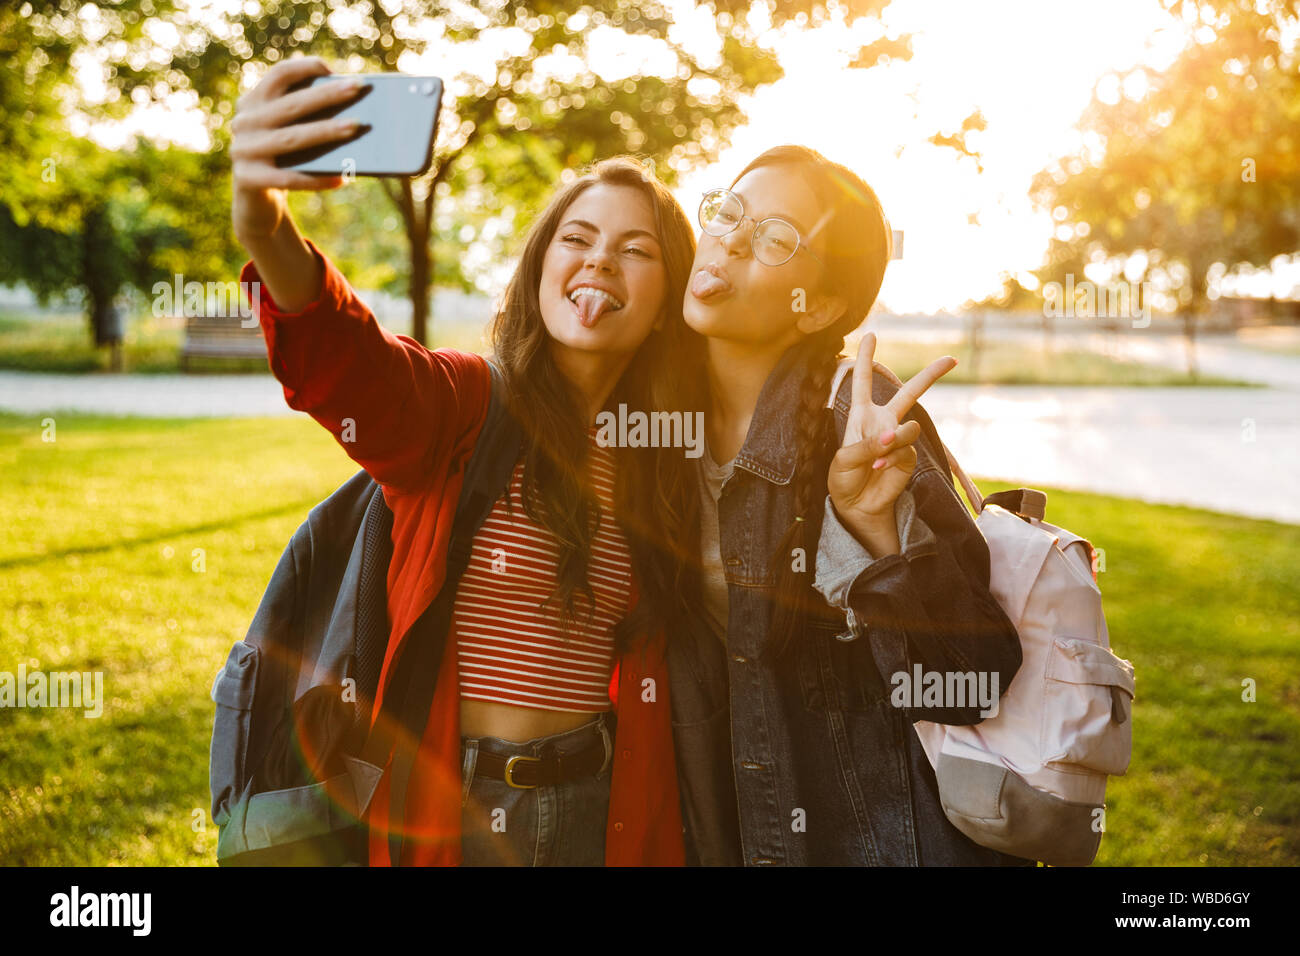 Image de deux funny girls en langues sortir prendre la photo sur téléphone portable et selfies gesturing signe de paix en vous promenant dans Green Park Banque D'Images